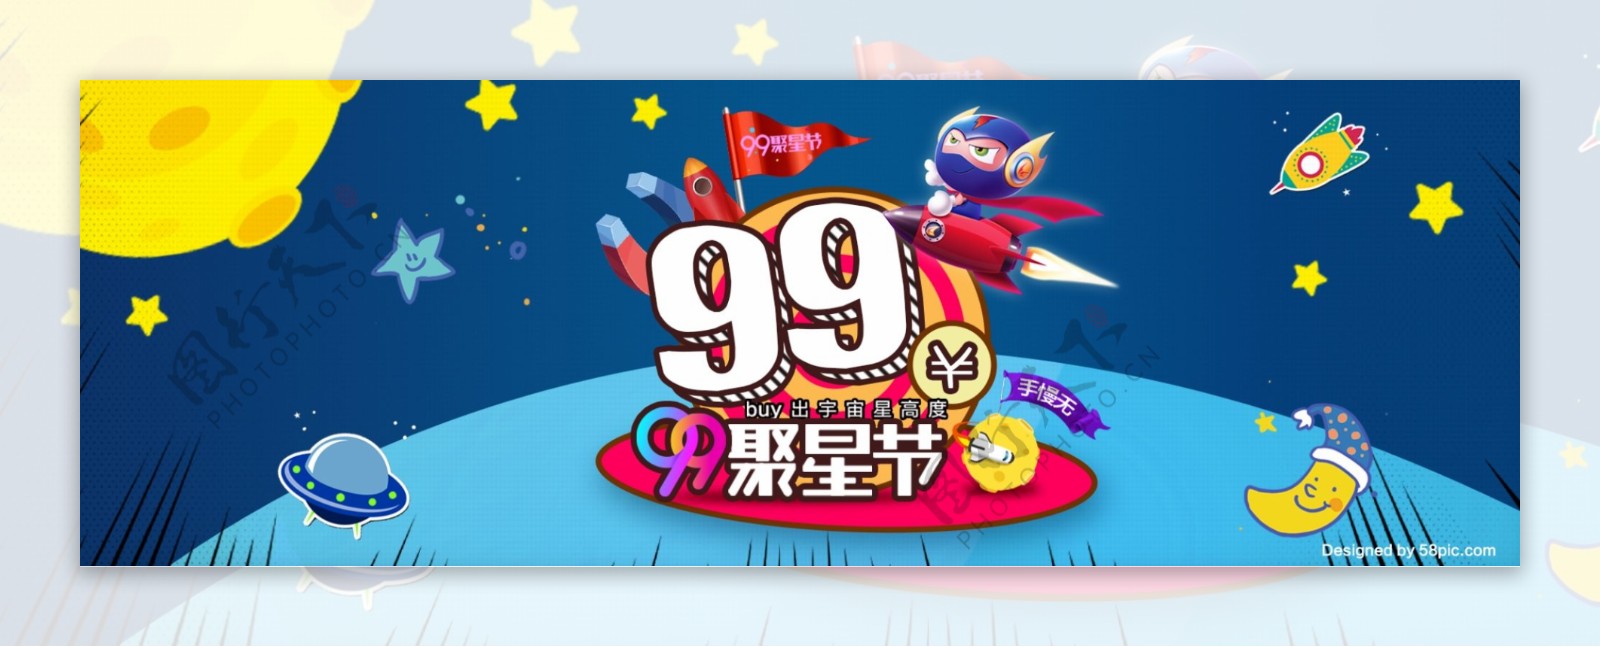 天猫淘宝炫酷99聚星节电器服装全品类通用海报banner模板